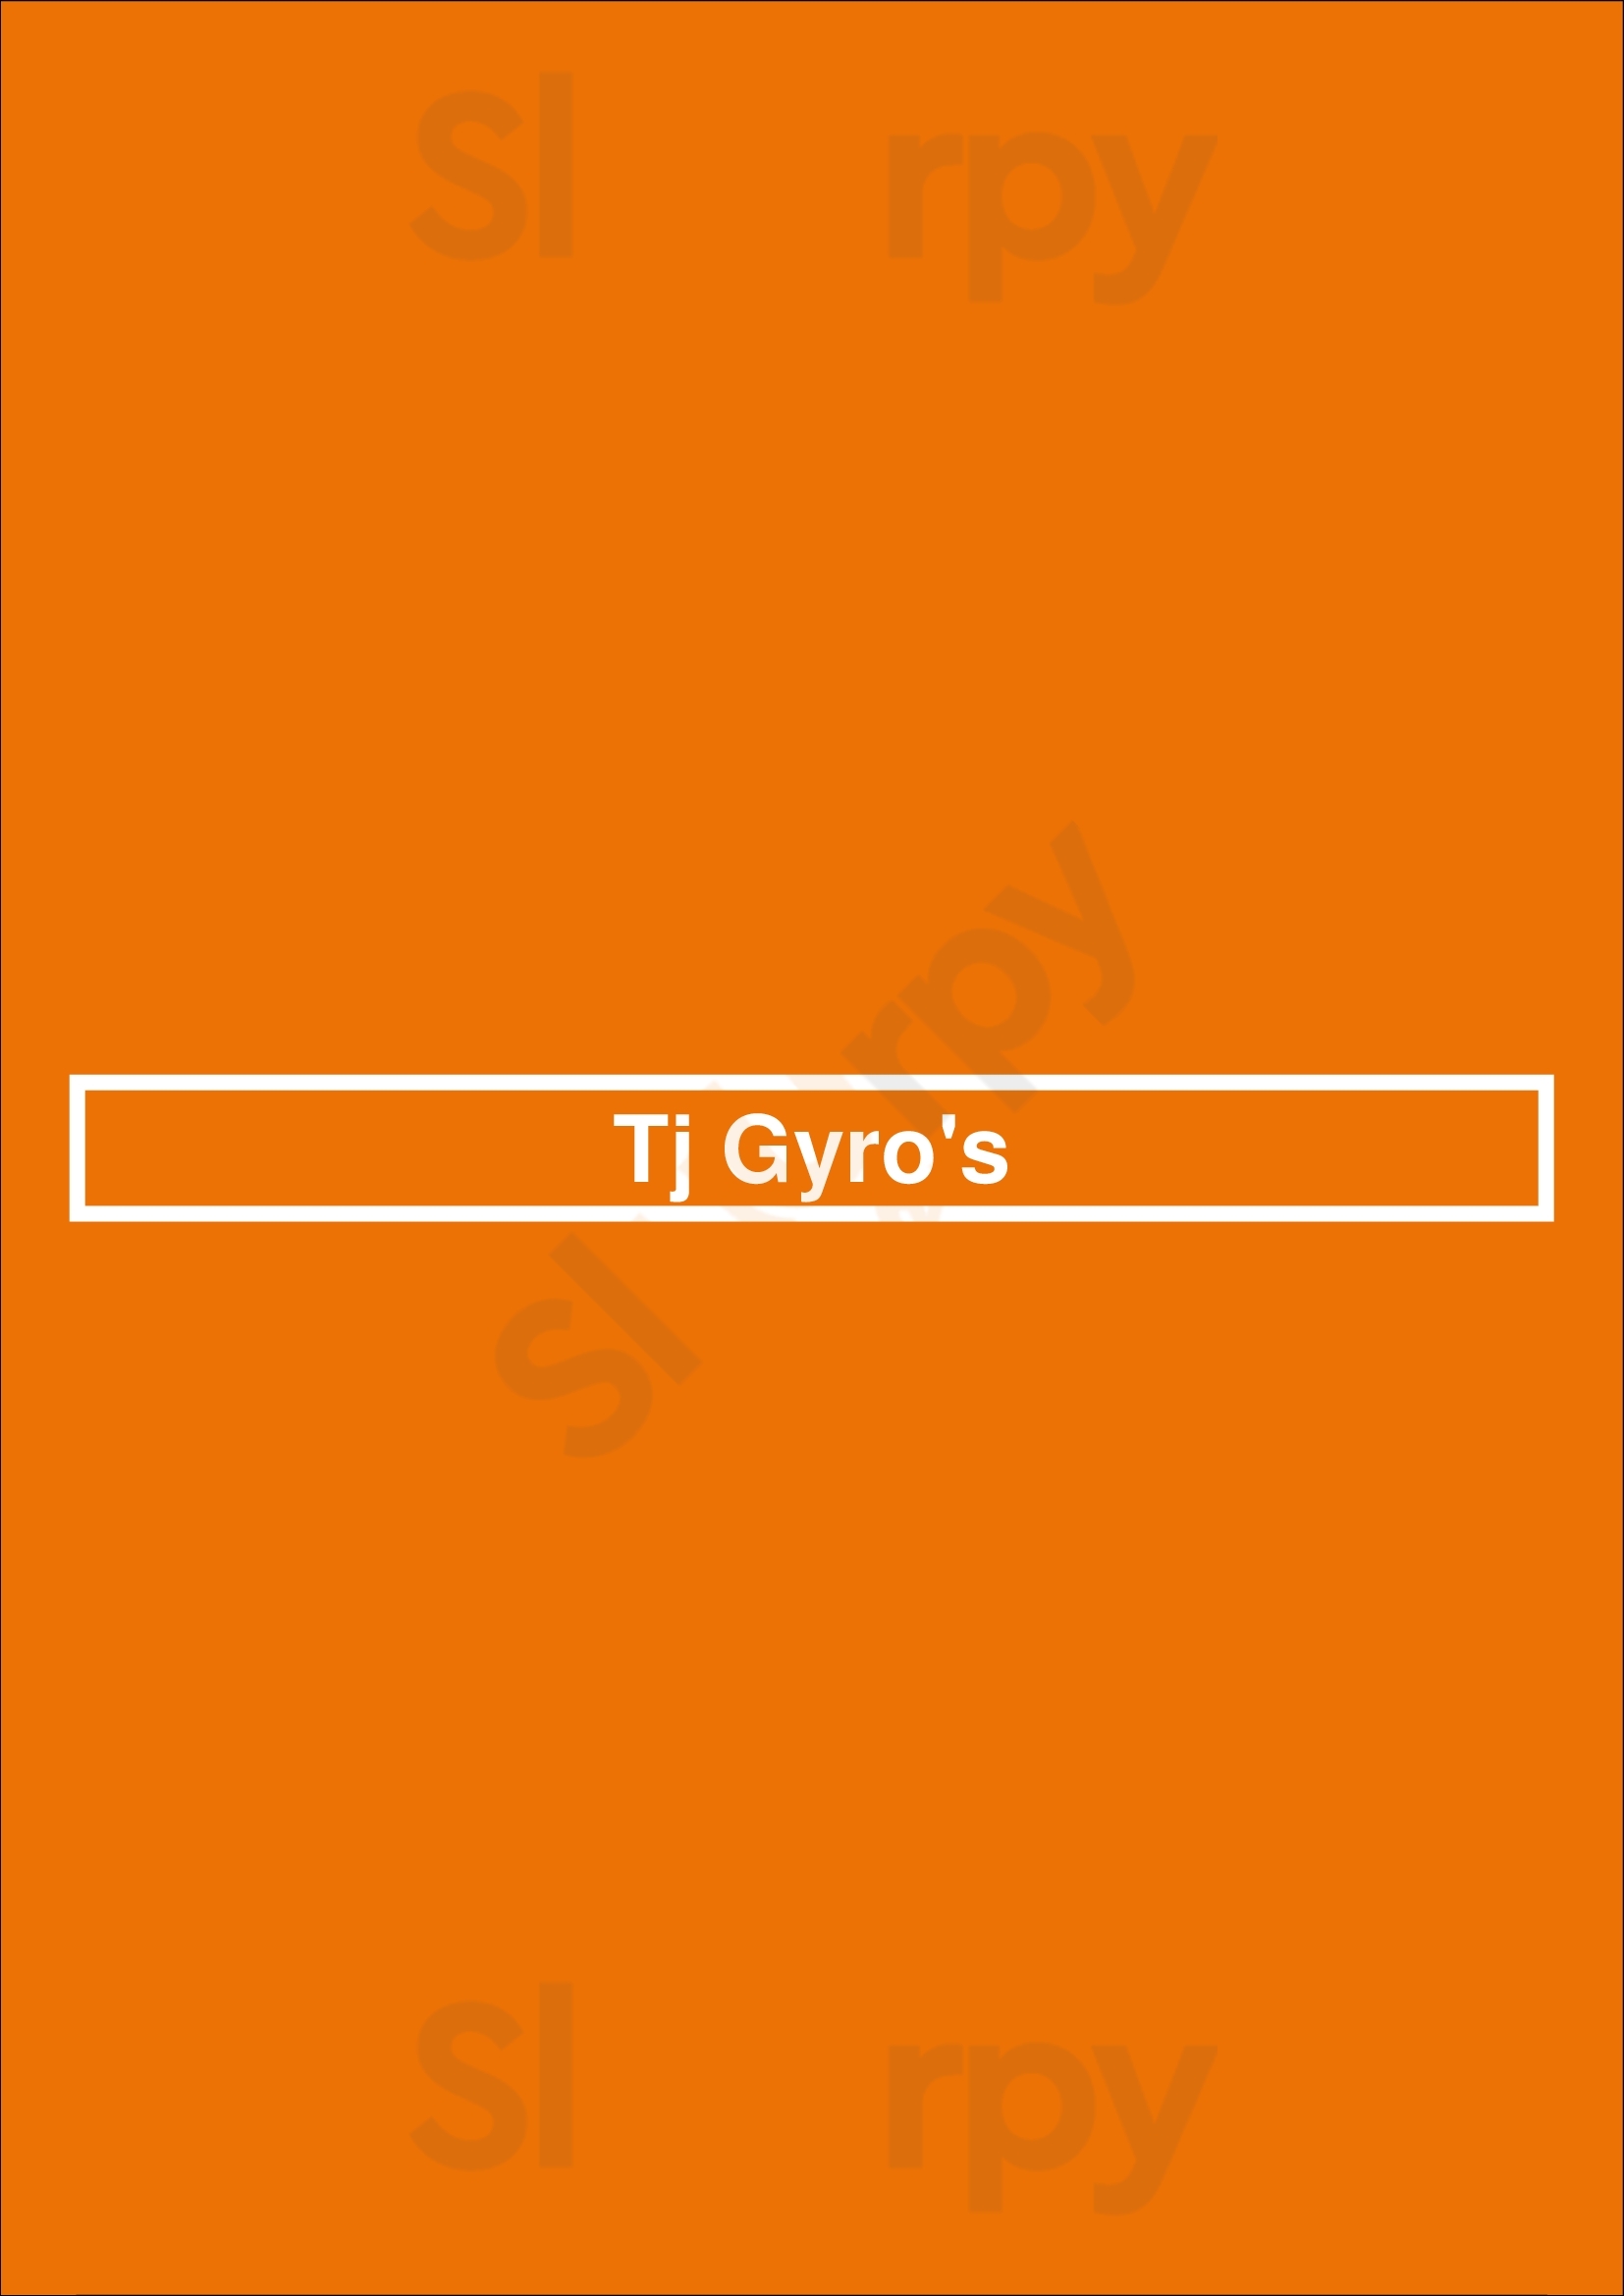 Tj Gyro's Chicago Menu - 1